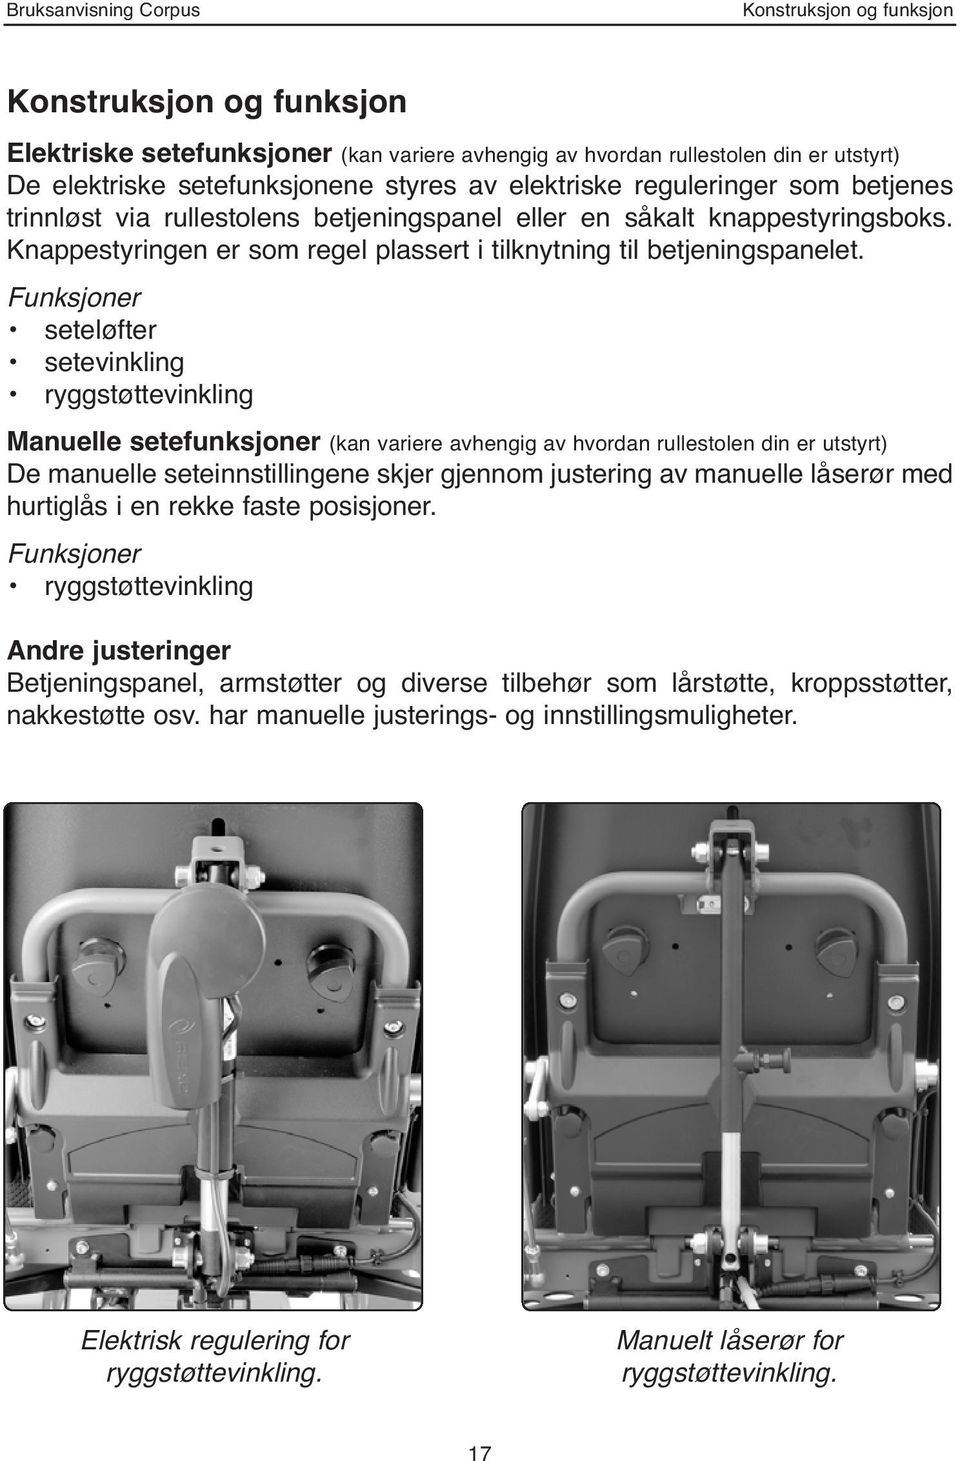 Funksjoner seteløfter setevinkling ryggstøttevinkling Manuelle setefunksjoner (kan variere avhengig av hvordan rullestolen din er utstyrt) De manuelle seteinnstillingene skjer gjennom justering av